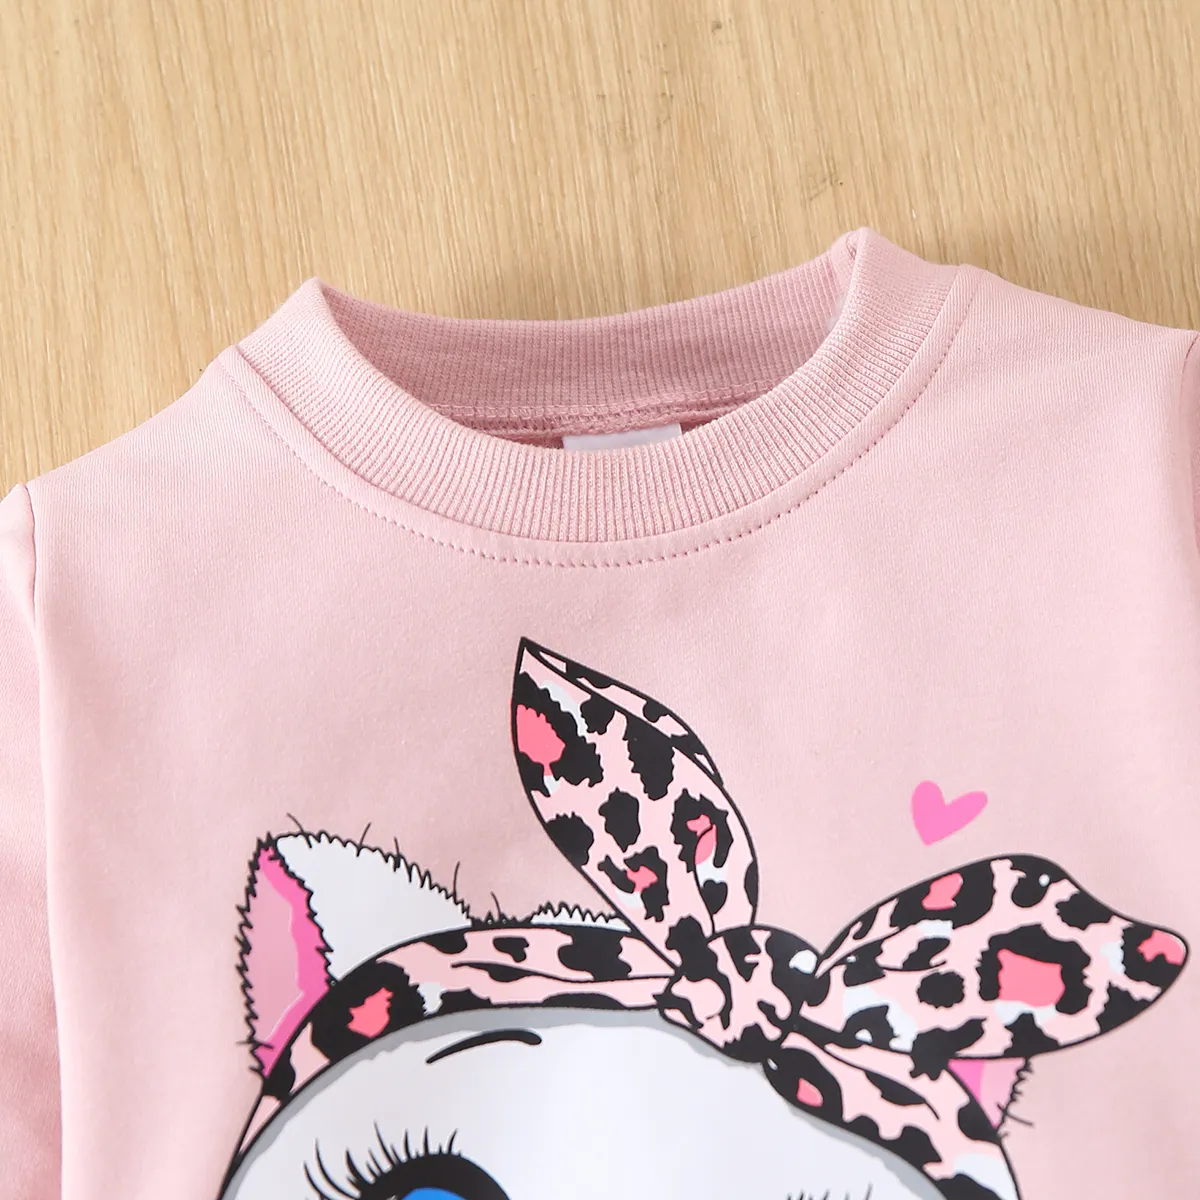 2 Stück Kleinkinder Mädchen Süß Katze Sweatshirt-Sets rosa big image 1